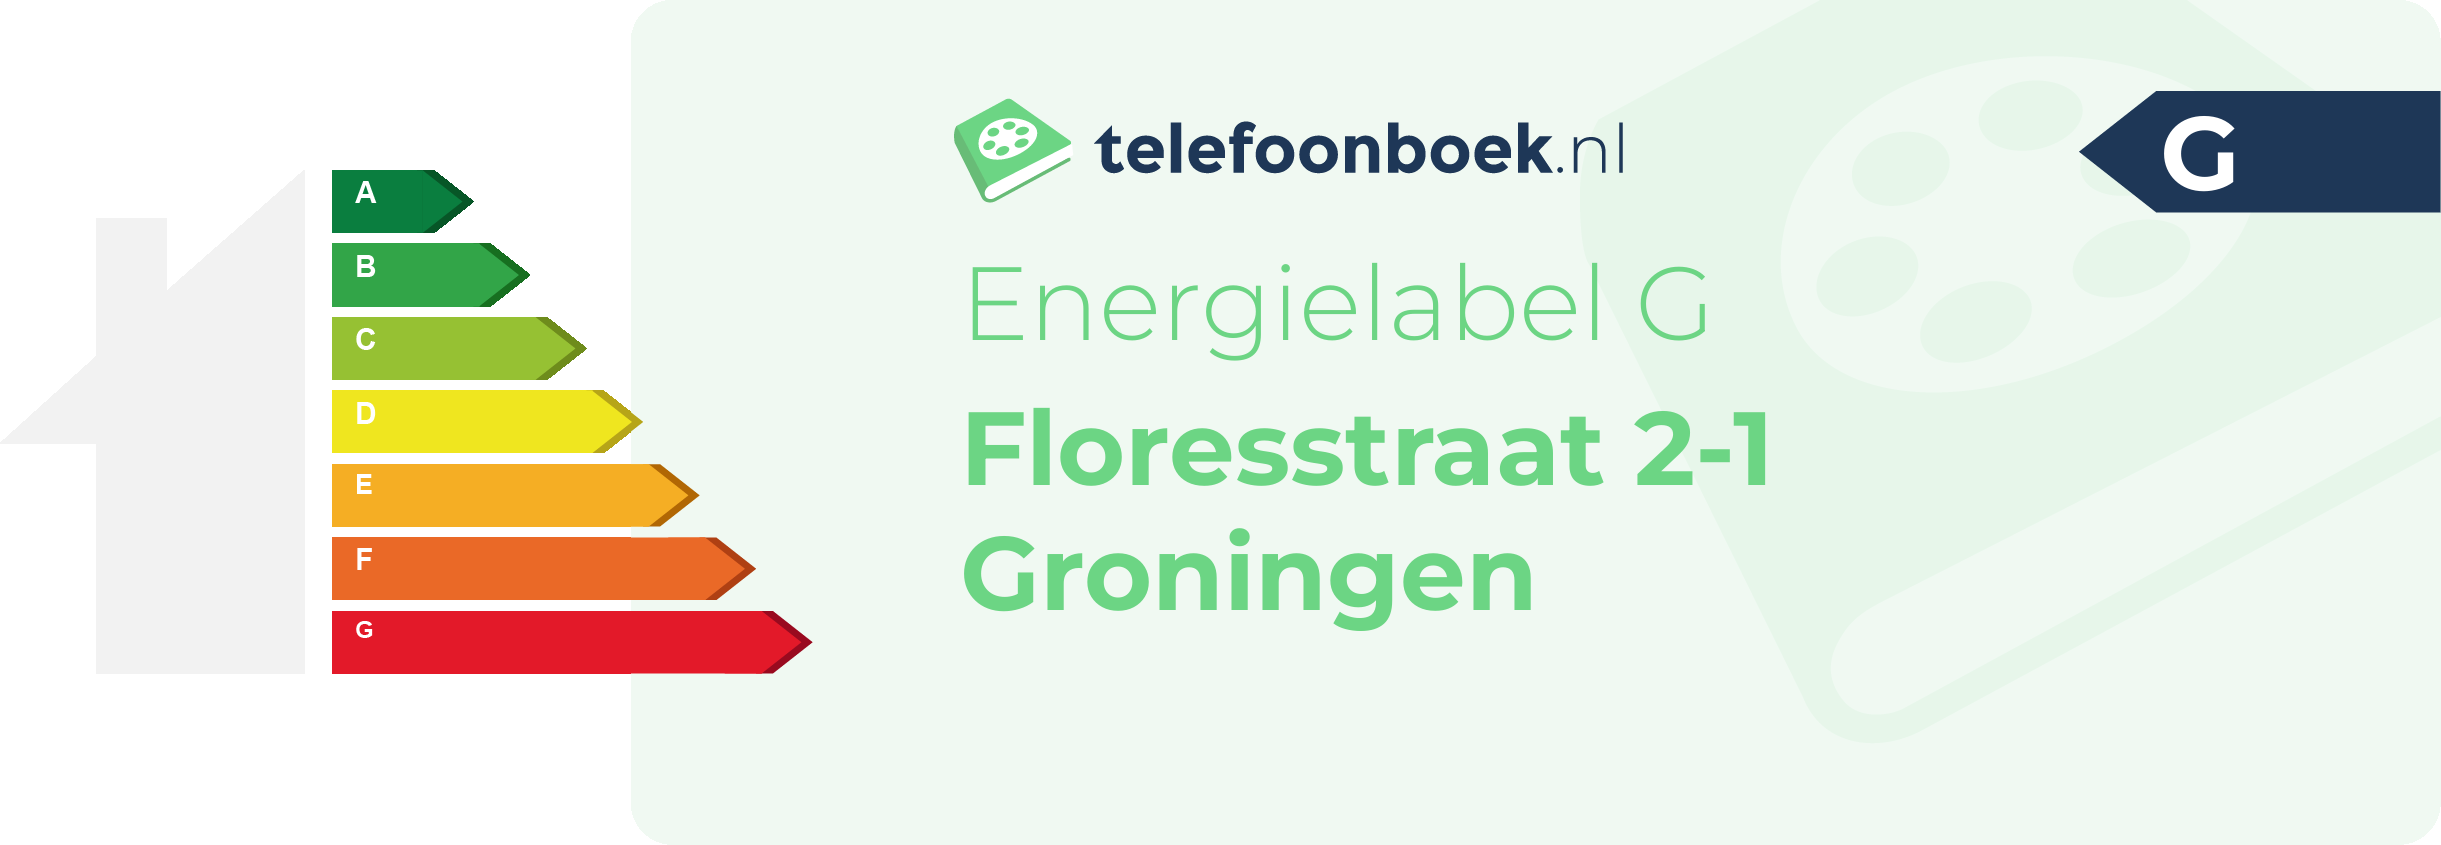 Energielabel Floresstraat 2-1 Groningen